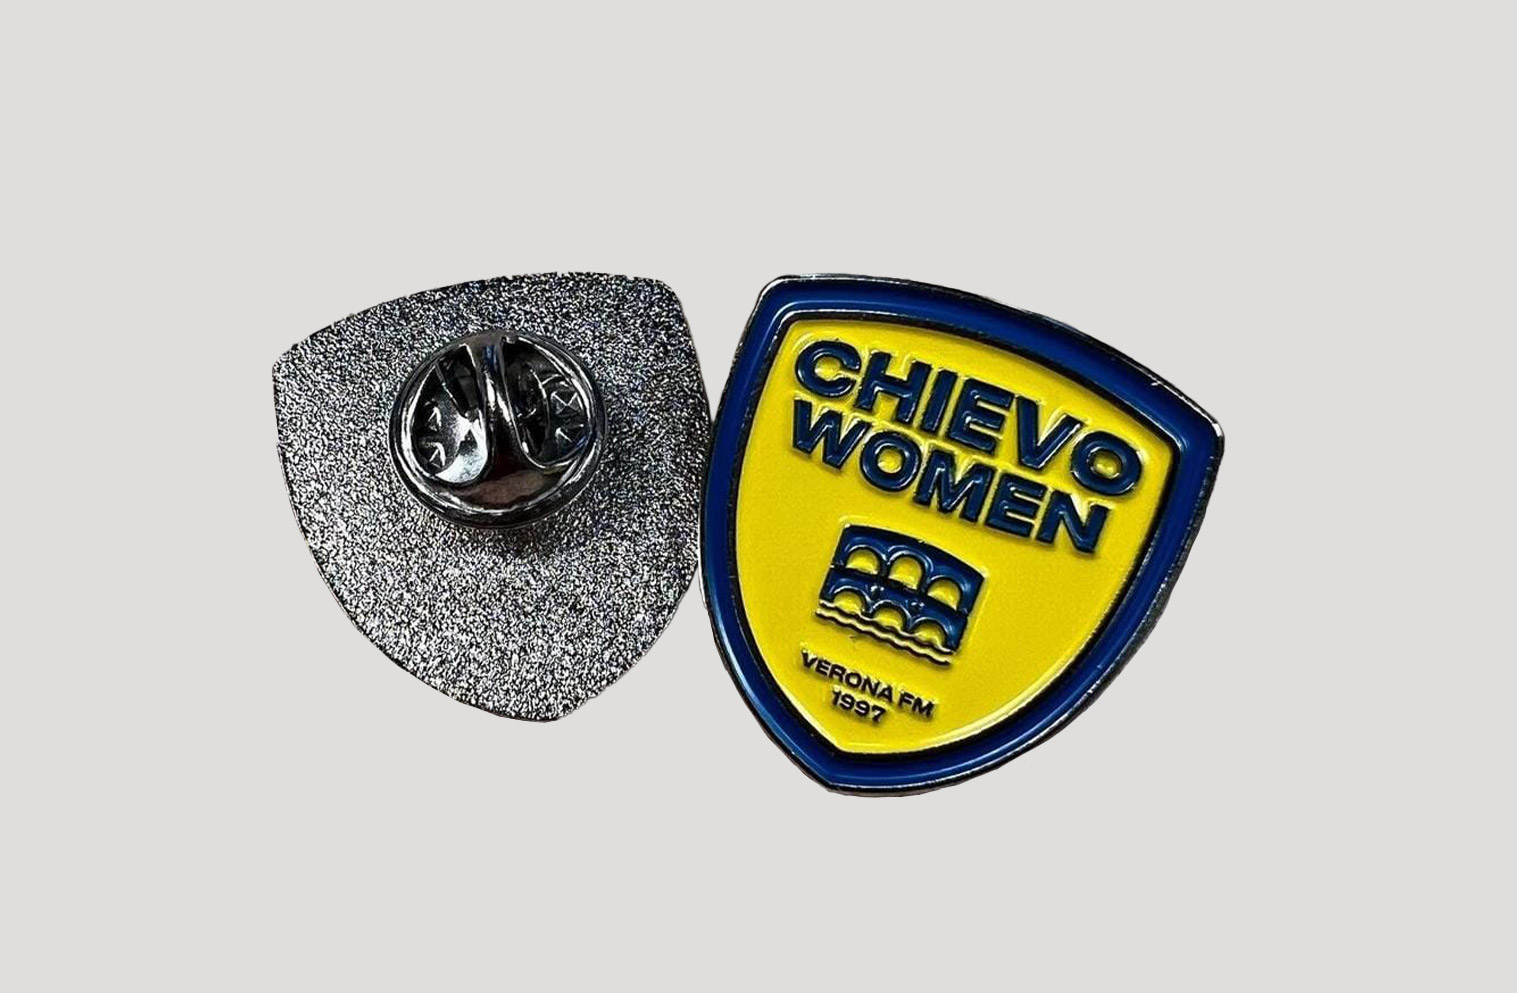 Spilla personalizzata Verona Chievo Women